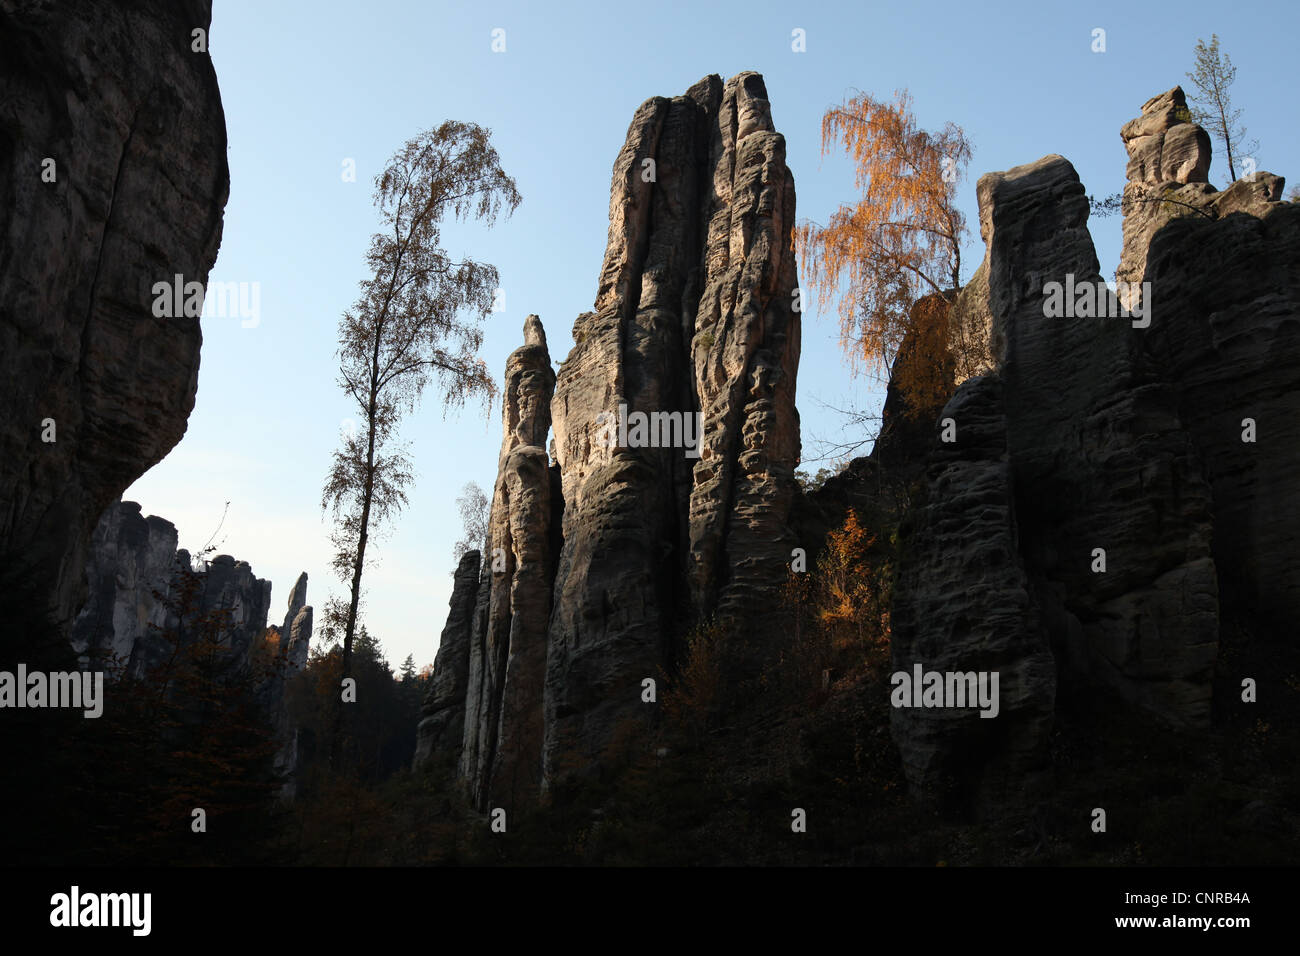 Prachover Felsen in das Landschaftsschutzgebiet Böhmisches Paradies in Mittelböhmen, Tschechien. Stockfoto